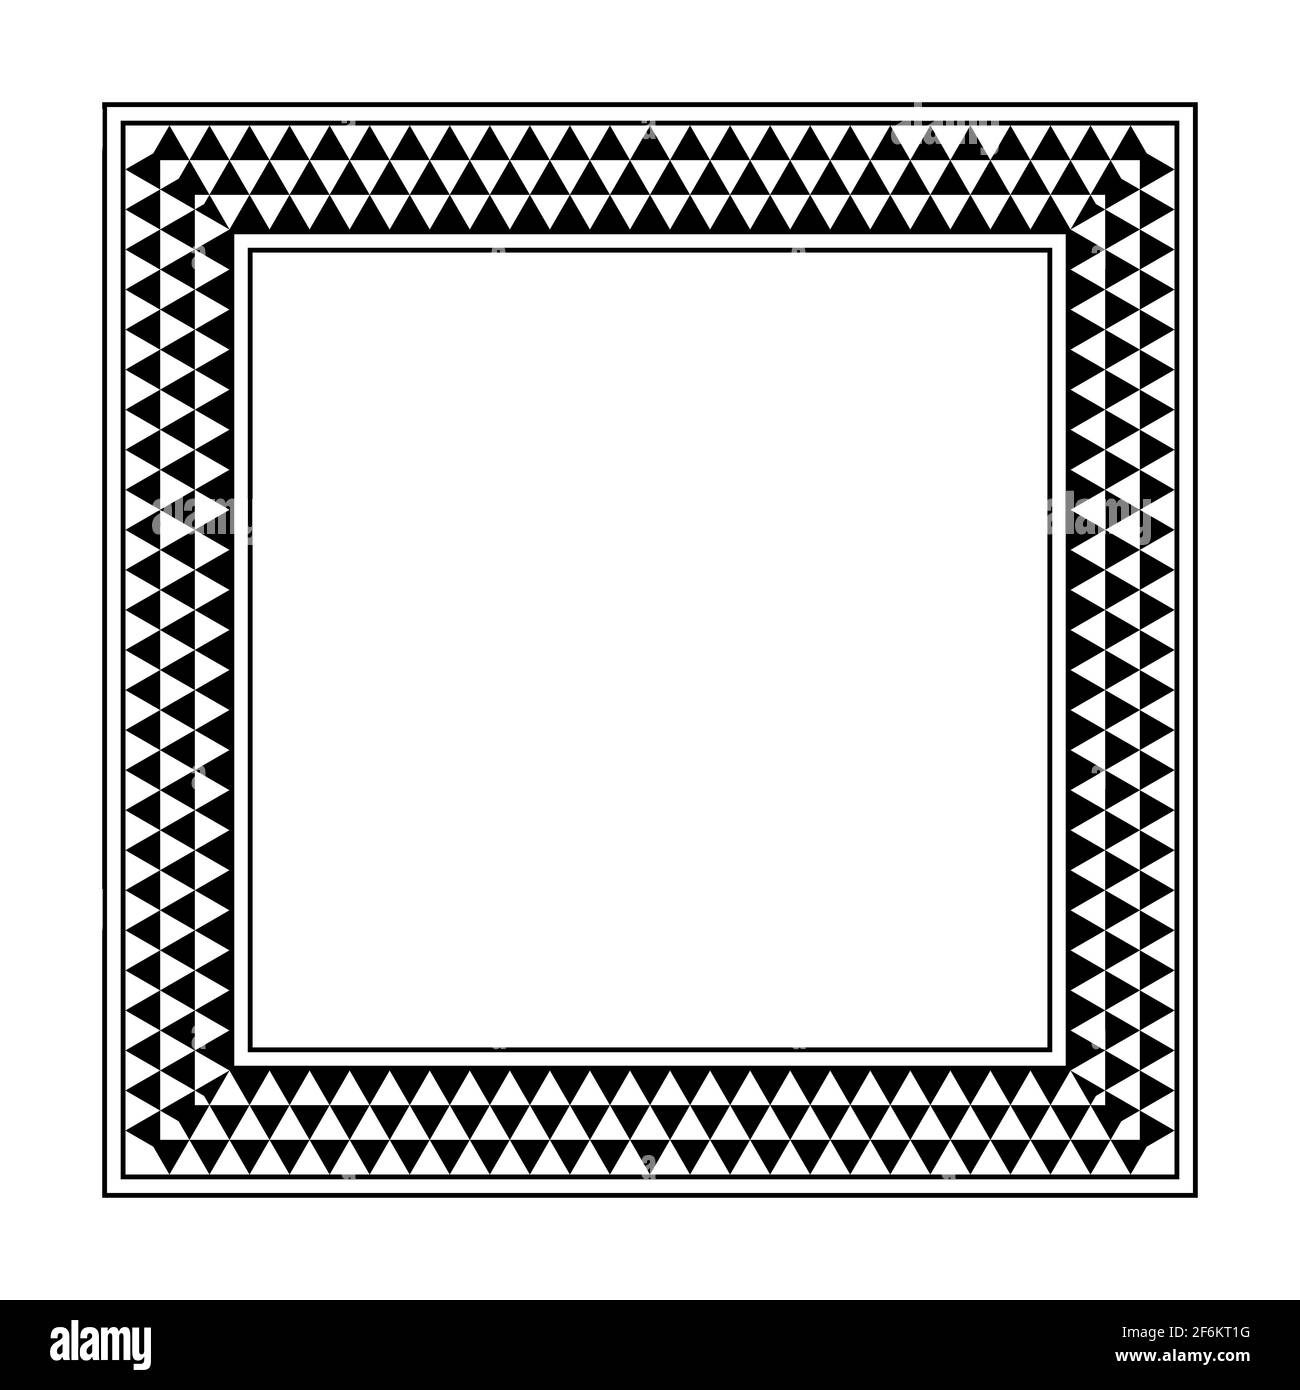 Rechteckiger Rahmen mit Karomuster und Dreieck. Länglicher Rand mit gezacktem Muster, bestehend aus drei Reihen von schwarzen und weißen abwechselnd Dreiecken. Stockfoto